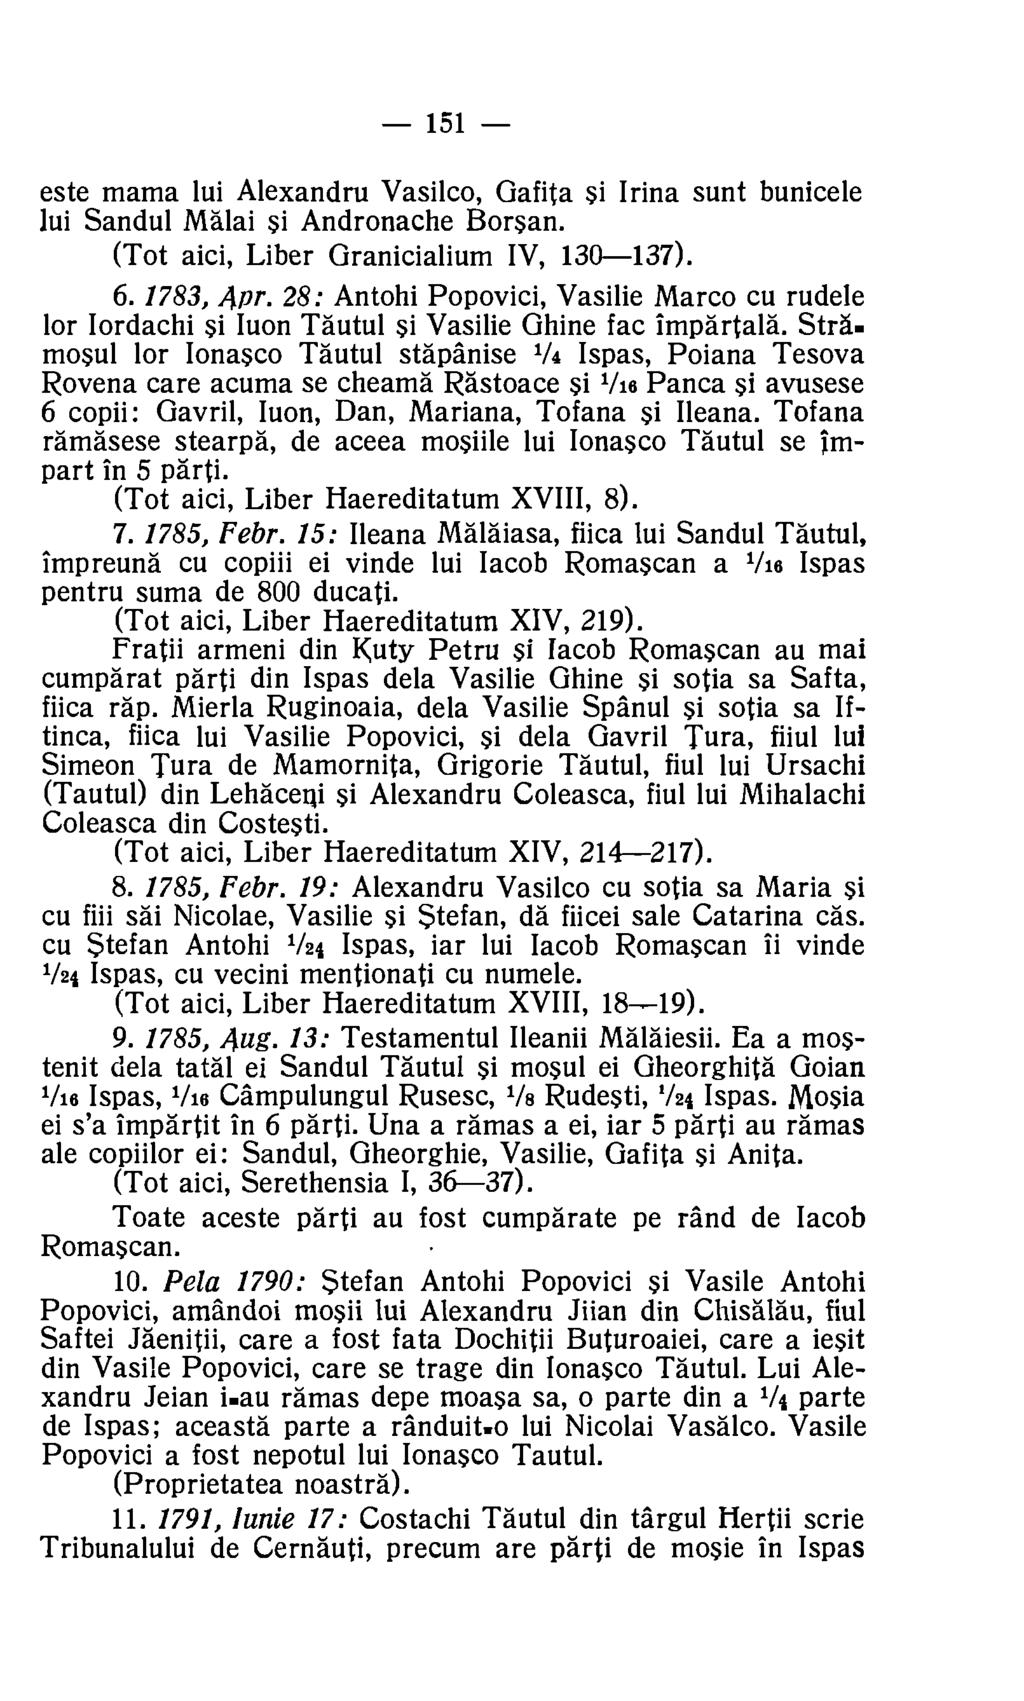 151 este mama lui Alexandru Vasilco, Gafita si Irina sunt bunicele lui Sandul Malai si Andronache Borsan. (Tot aici, Liber Granicialium IV, 130-137). 6. 1783, Apr.